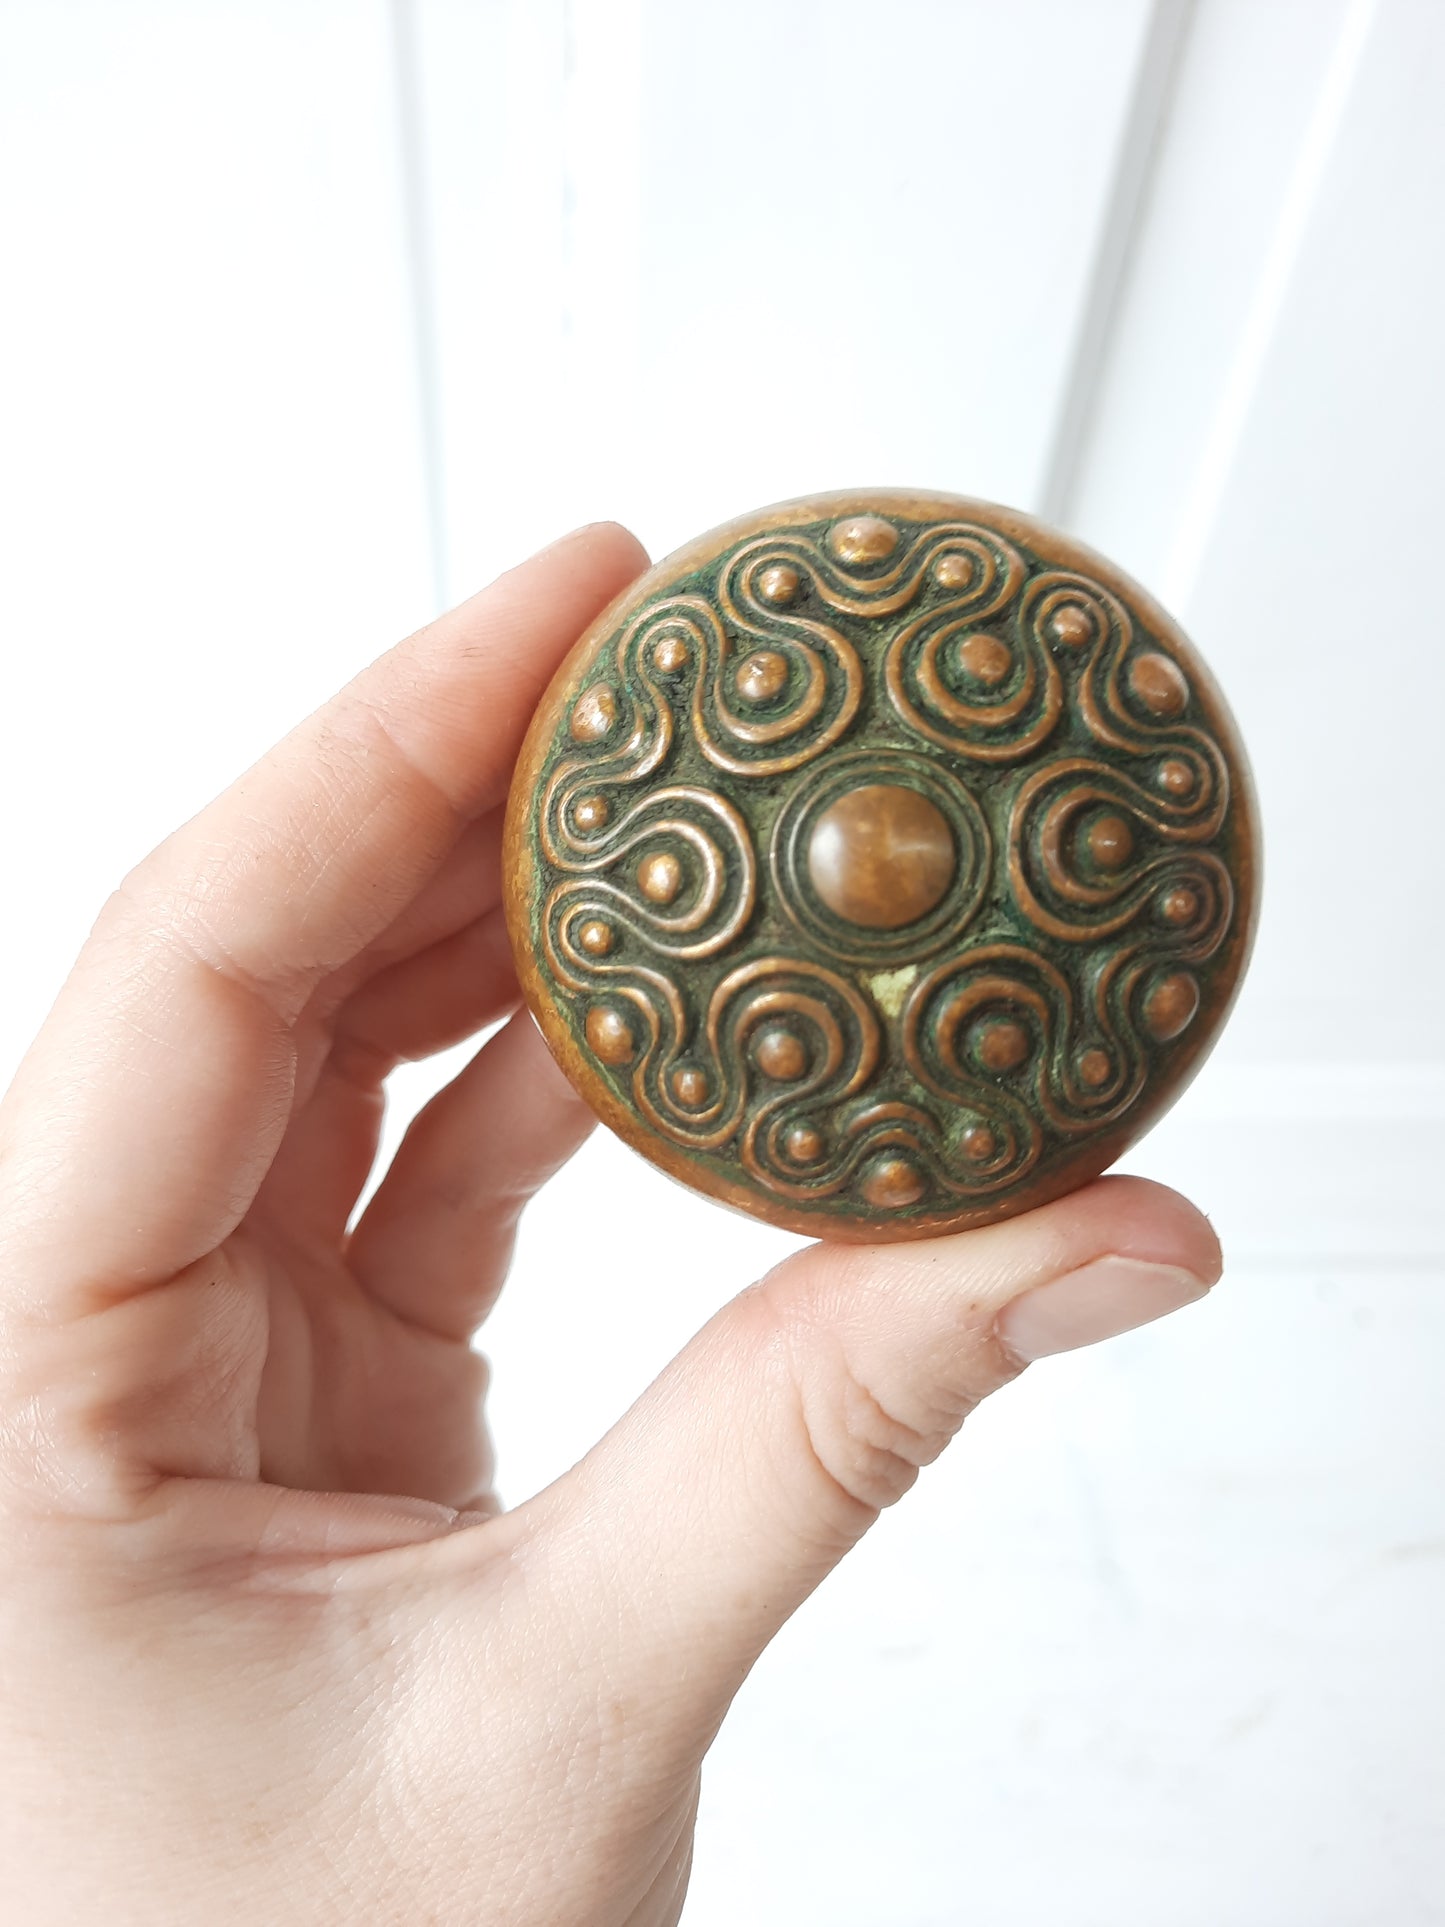 Delphi Pattern Doorknob Set by Russell Erwin, Antique Swirl Design Bronze Door Knob Pair